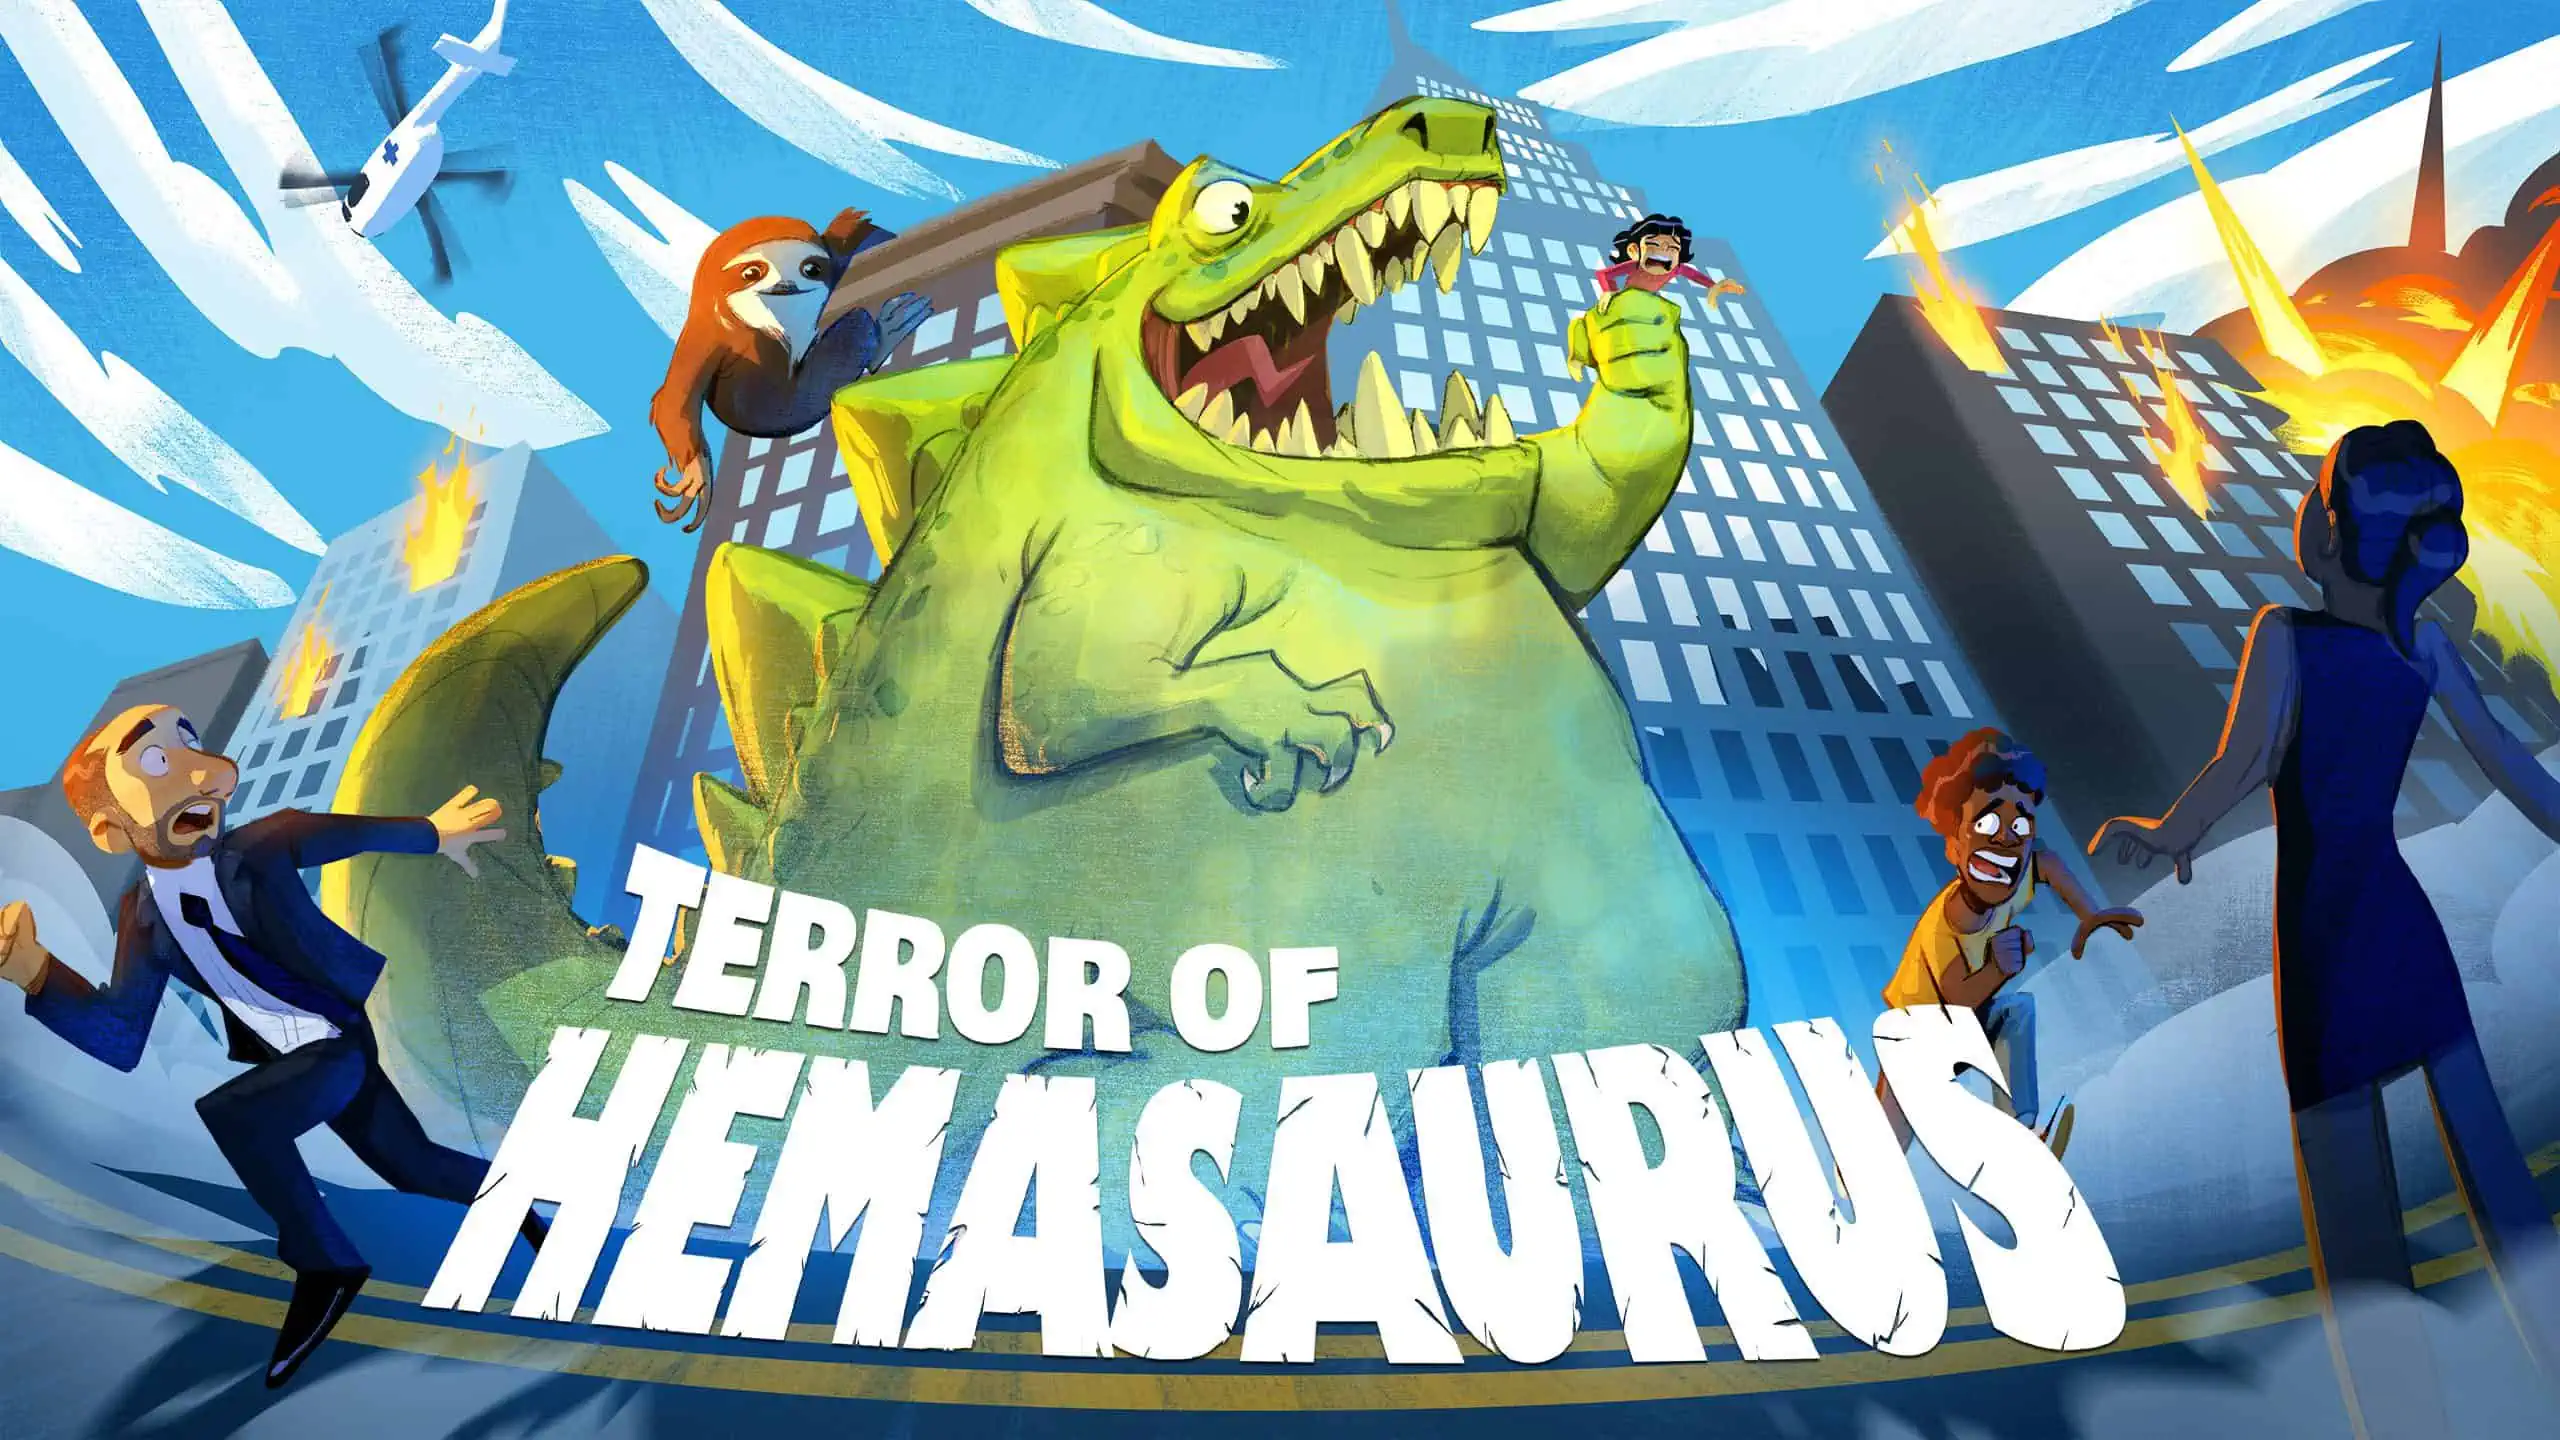 Terror of Hemasaurus game poster